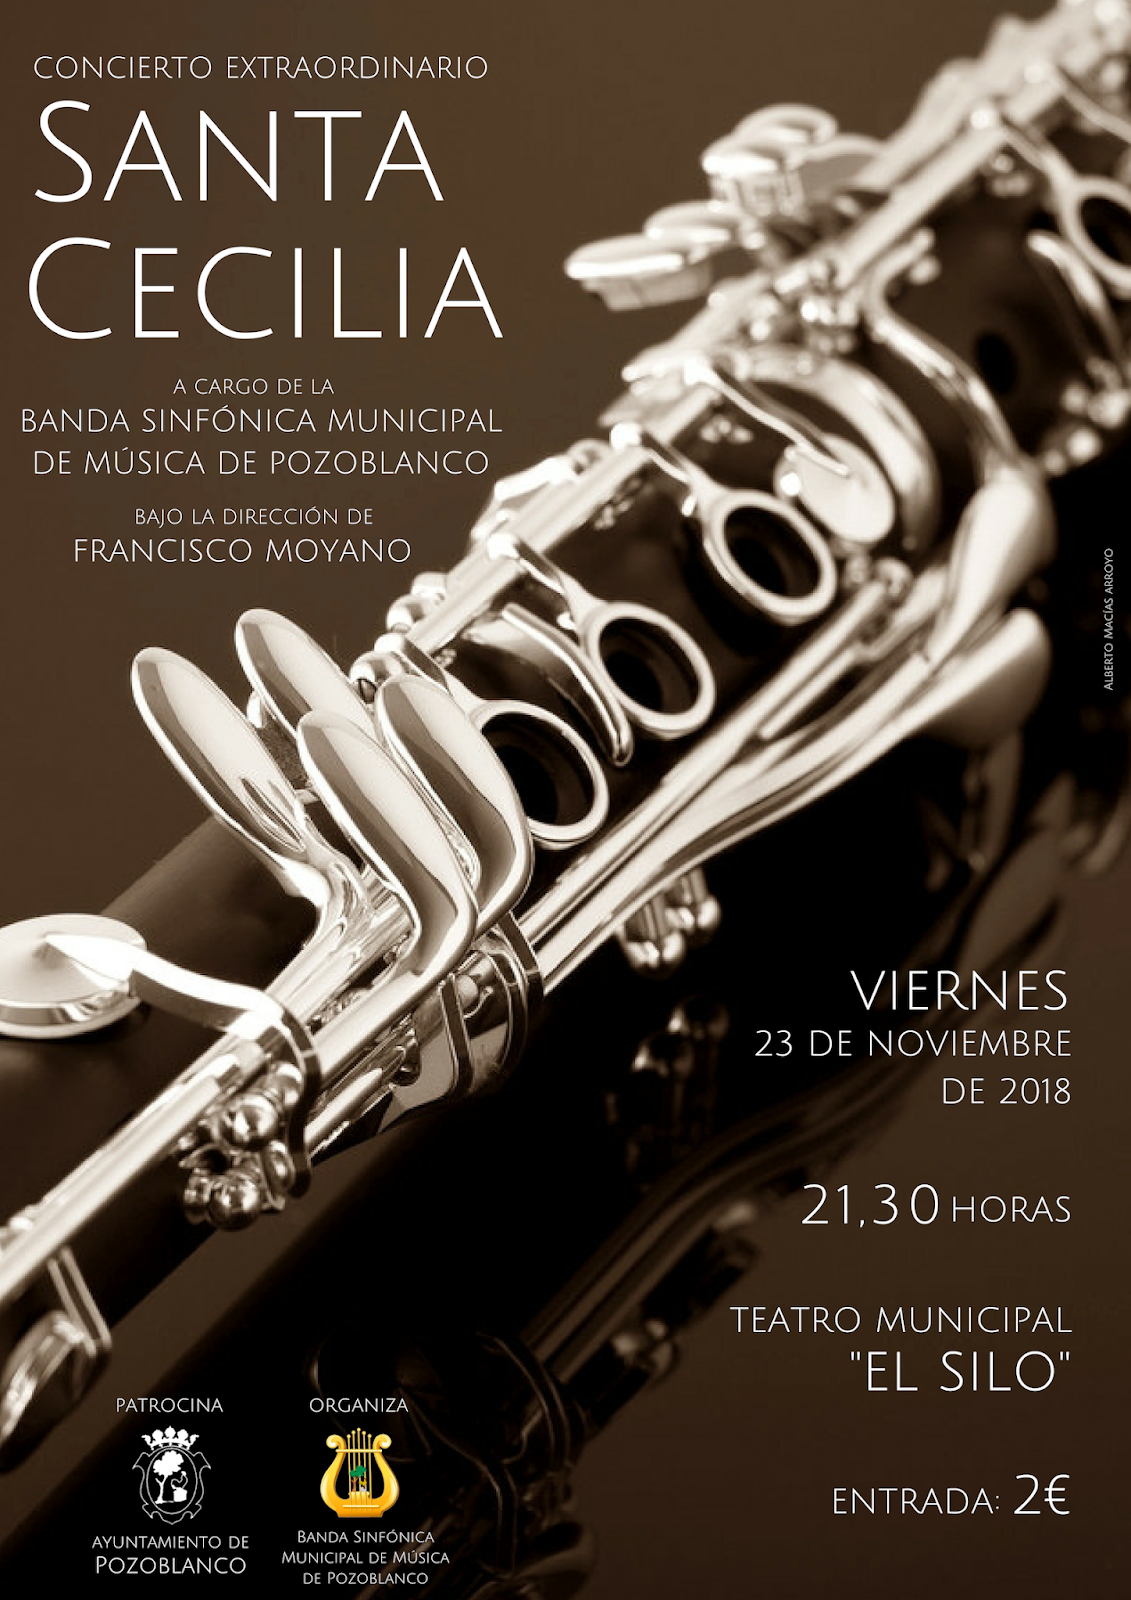 Concierto Extraordinario Santa Cecilia - Banda Sinfónica Municipal de Pozoblanco